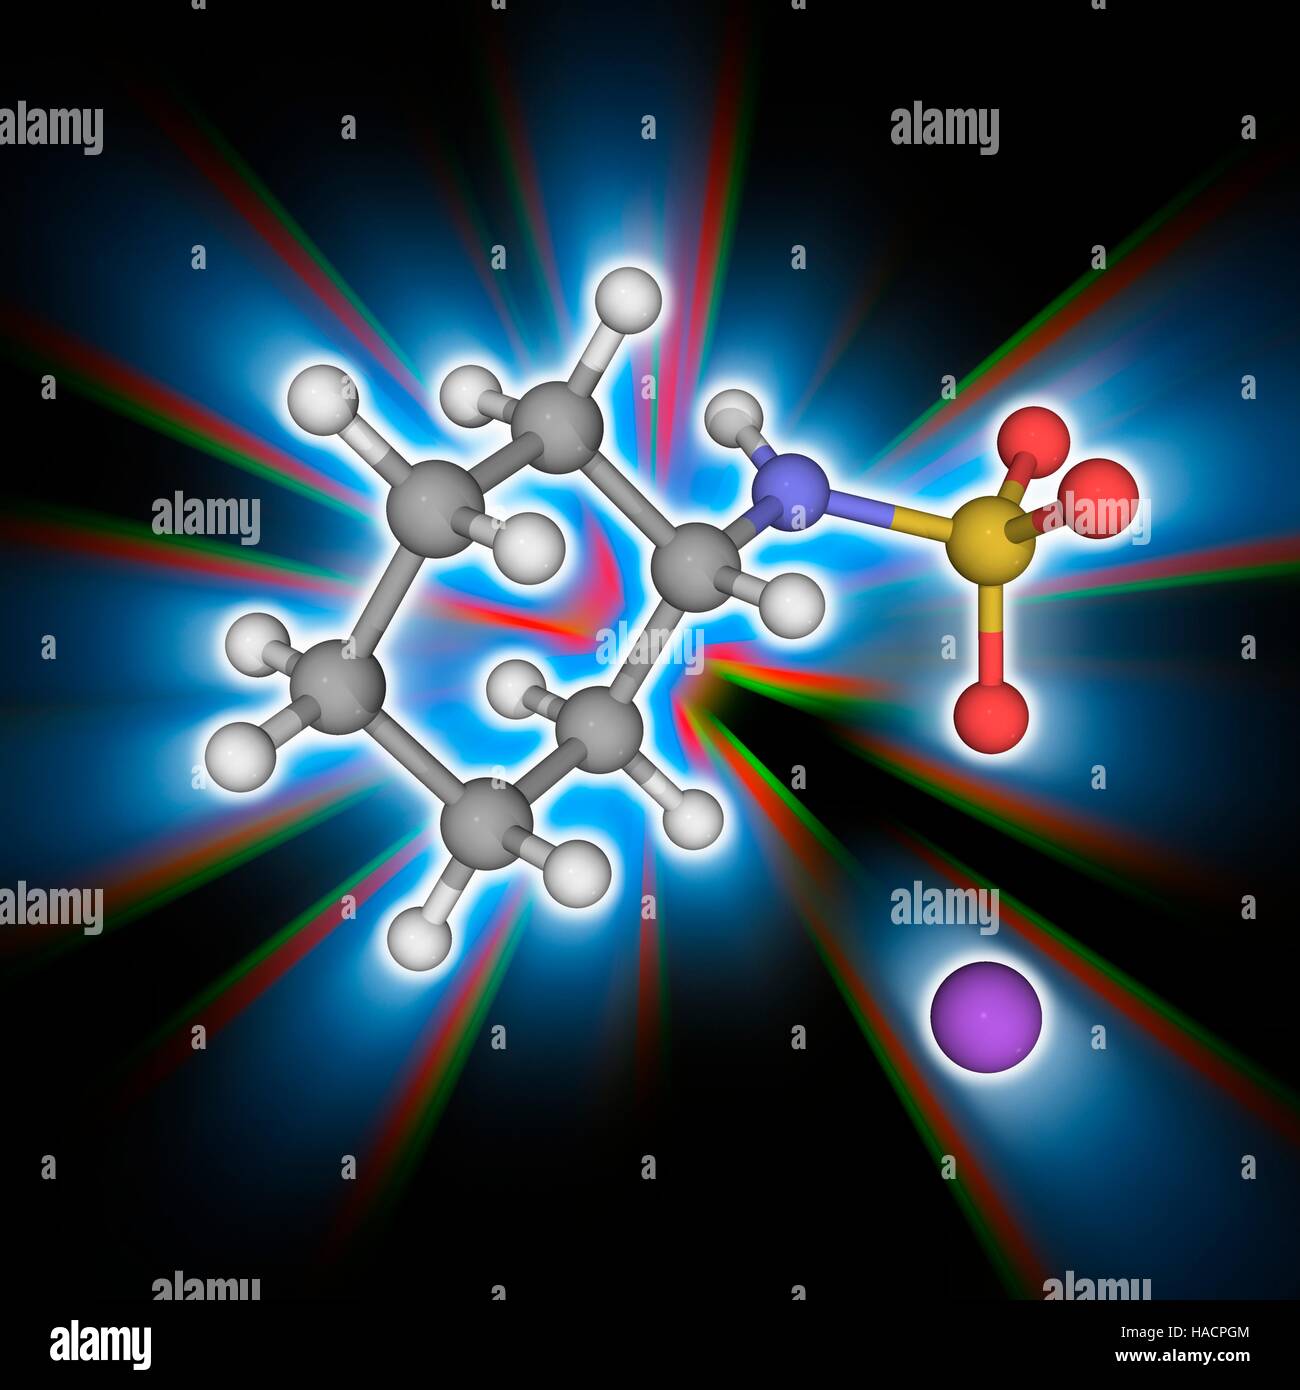 Natriumcyclamat. Molekulares Modell des künstlichen Süßstoff Natriumcyclamat (C6. H12. N.Na.O3.S). Es ist bis zu 50-mal süßer als normaler Zucker (Saccharose). Atome als Kugeln dargestellt werden und sind farblich gekennzeichnet: Kohlenstoff (grau), Wasserstoff (weiß), Stickstoff (blau), Sauerstoff (rot), Schwefel (gelb) und Natrium (violett). Abbildung. Stockfoto